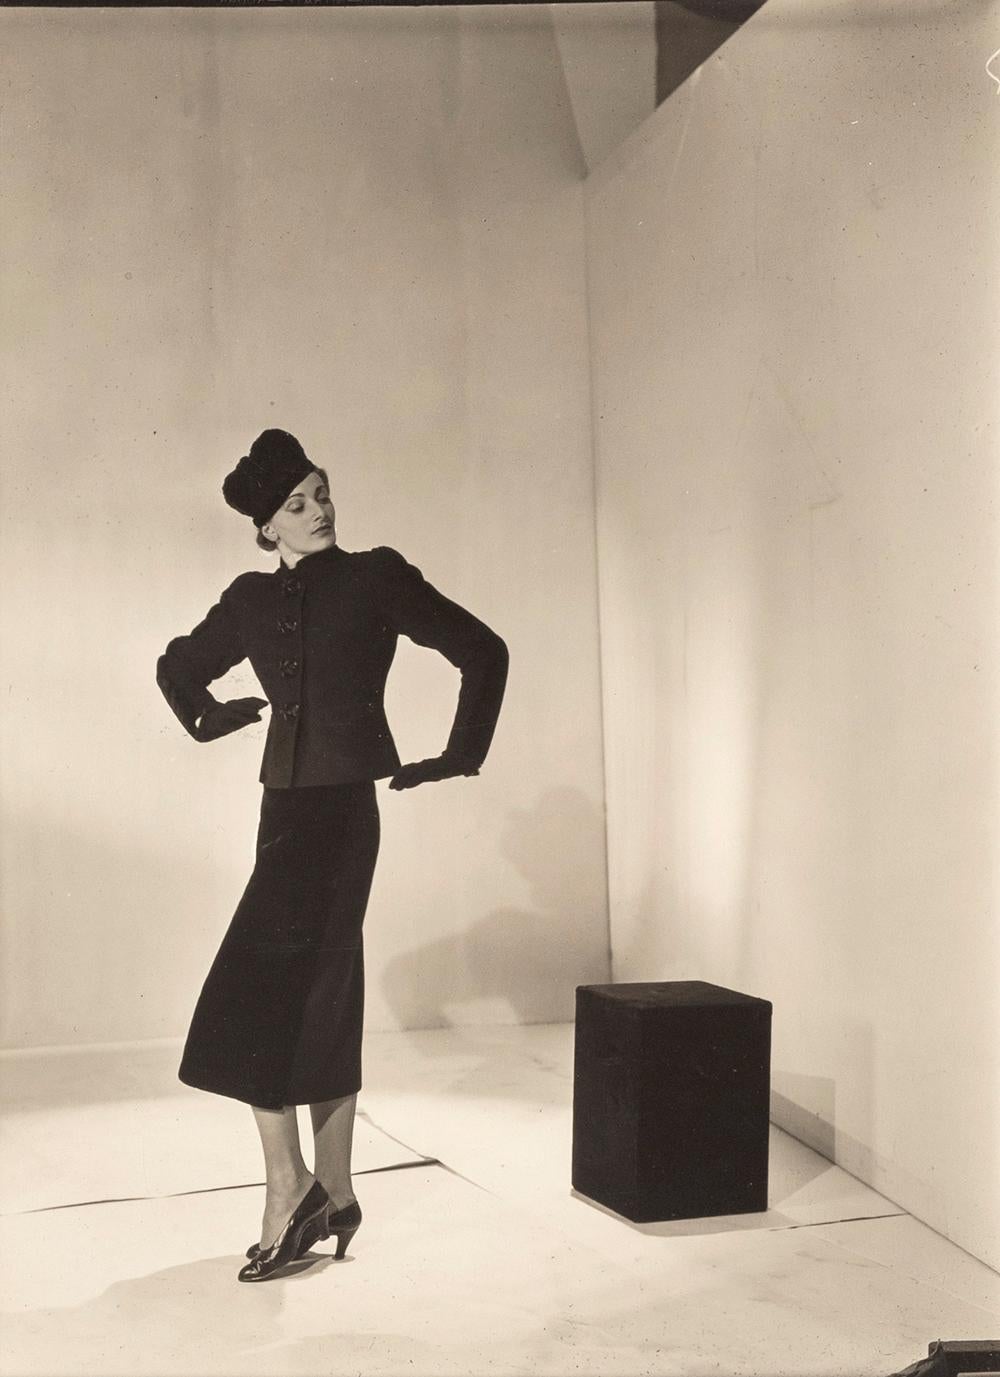 Modell Schiaparelli, Paris, um 1936 - Cecil Beaton (Modeporträtfotografie)
Bezeichnet von unbekannter Hand mit "Paris model" und "Schiaparelli" und rückseitig mit Tintenstempeln des Fotografen und des Sotheby's Studio Cecil Beaton